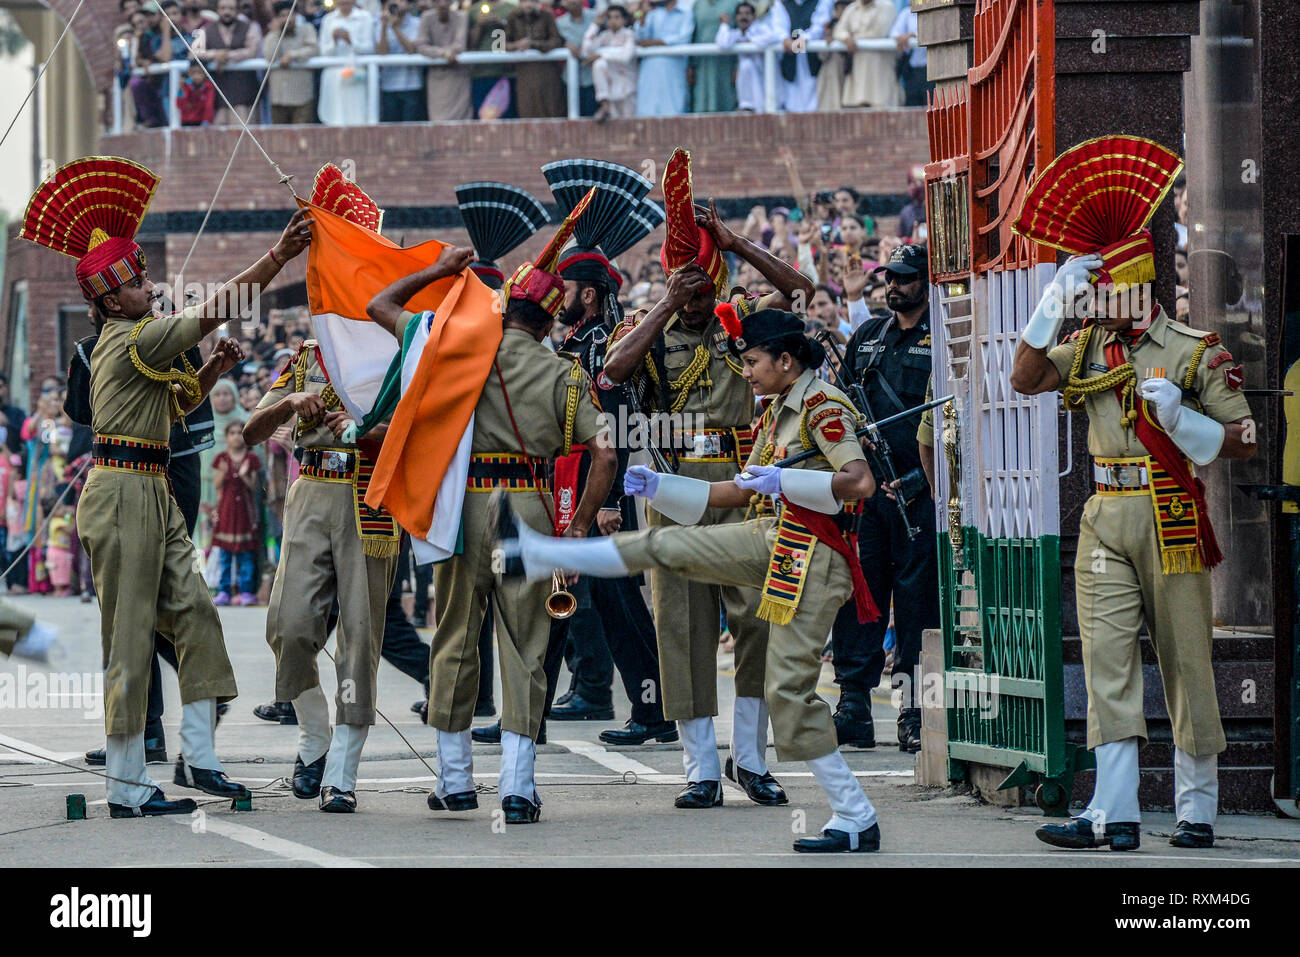 L'INDE, ATTARI, la cérémonie de clôture de la frontière tous les jours à la frontière à Indian-Pakistan Wagah-Attari est un opéra comme spectacle qui attire tu Banque D'Images